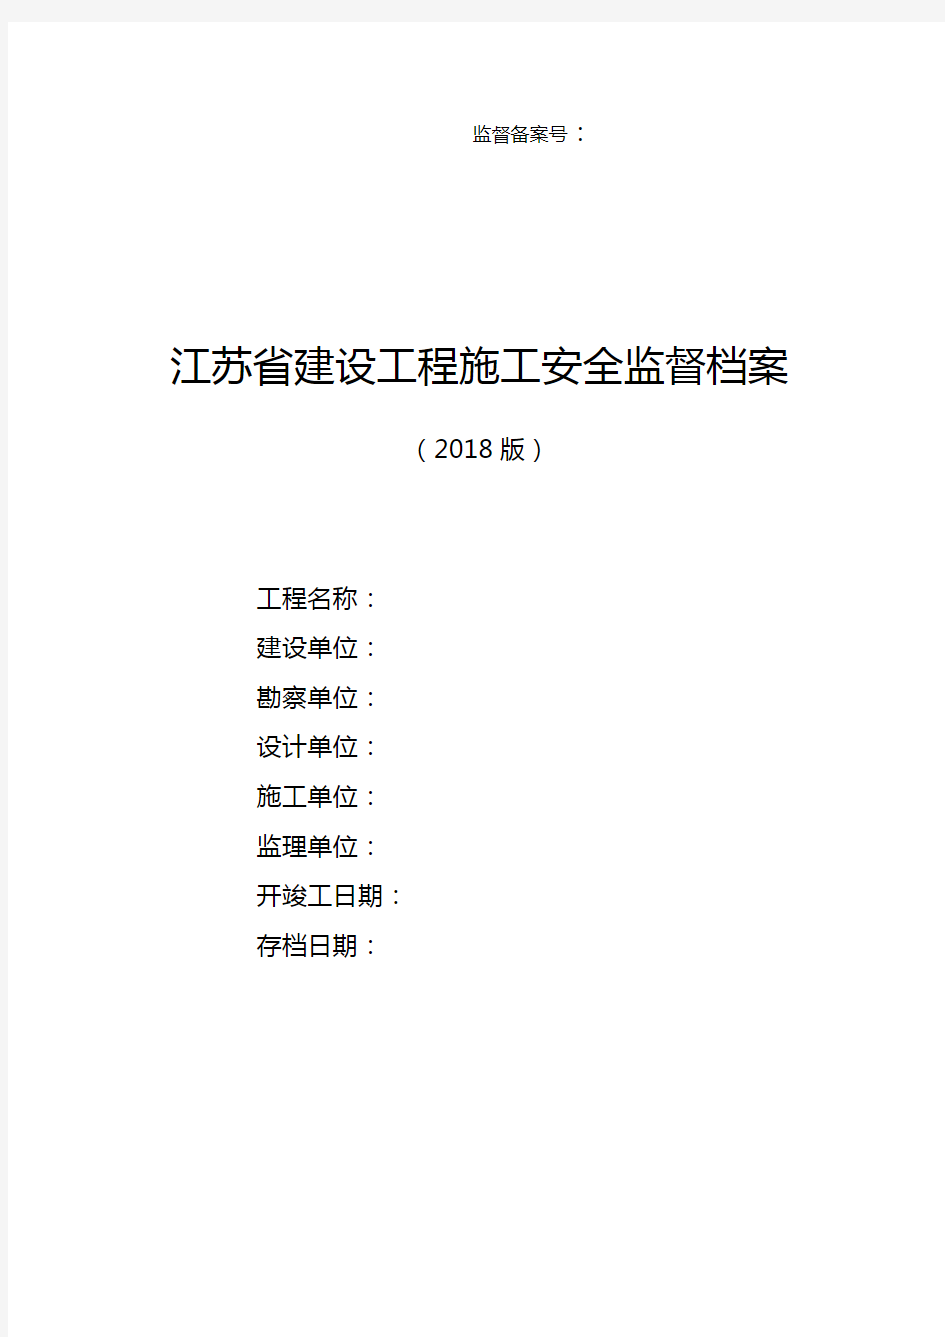 江苏省建设工程施工安全监督档案(2018年版)